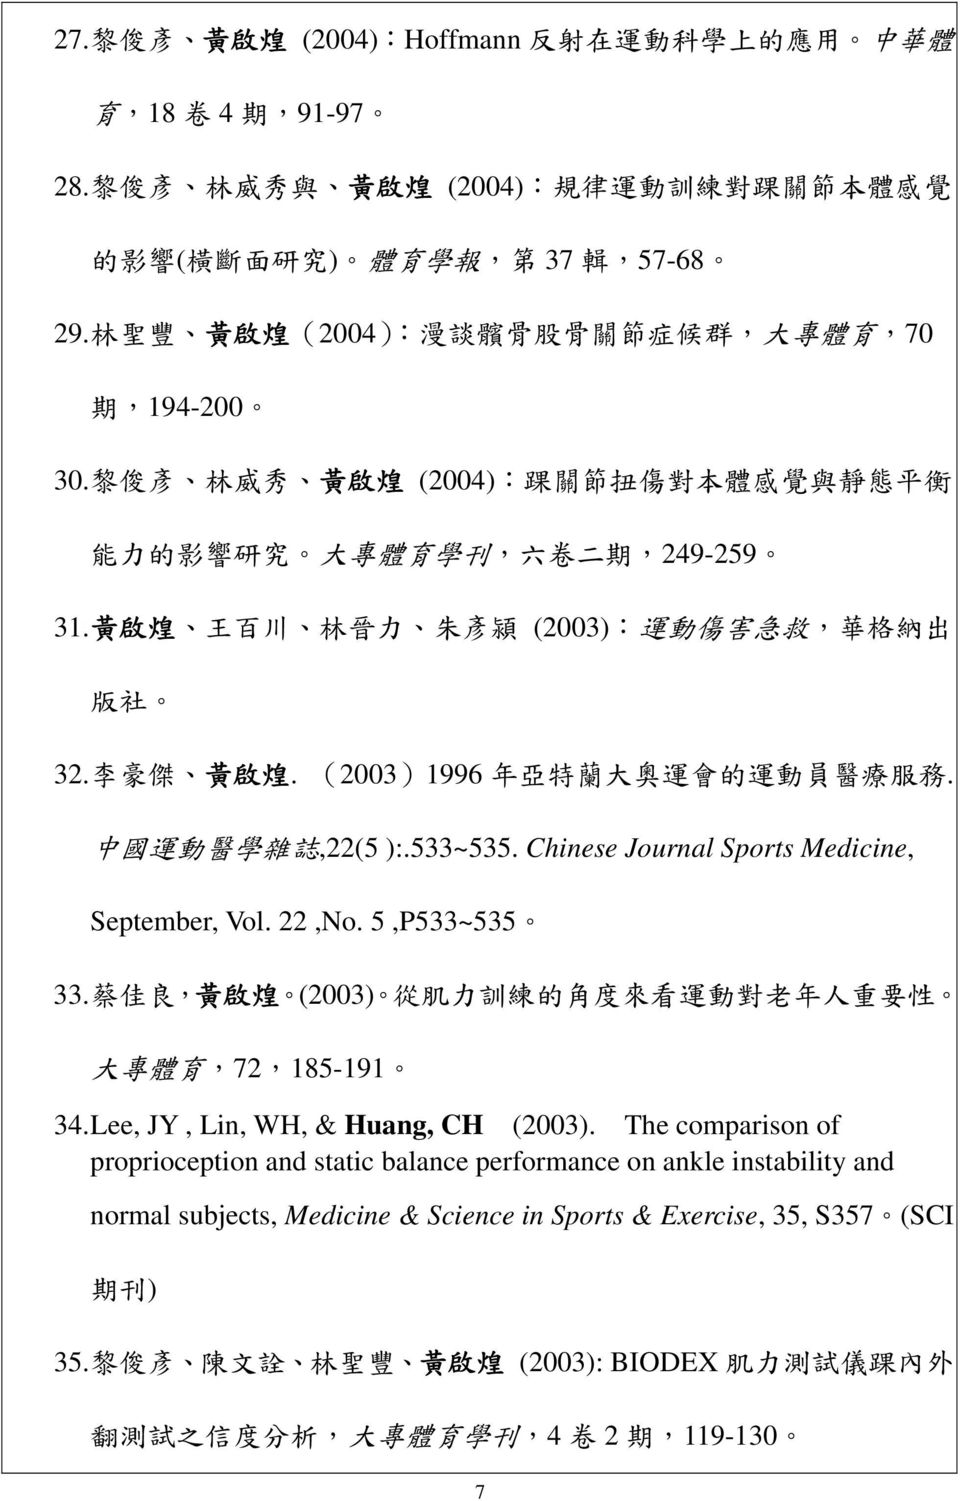 黃 啟 煌 王 百 川 林 晉 力 朱 彥 潁 (2003): 運 動 傷 害 急 救, 華 格 納 出 版 社 32. 李 豪 傑 黃 啟 煌. (2003)1996 年 亞 特 蘭 大 奧 運 會 的 運 動 員 醫 療 服 務. 中 國 運 動 醫 學 雜 誌,22(5 ):.533~535. Chinese Journal Sports Medicine, September, Vol.